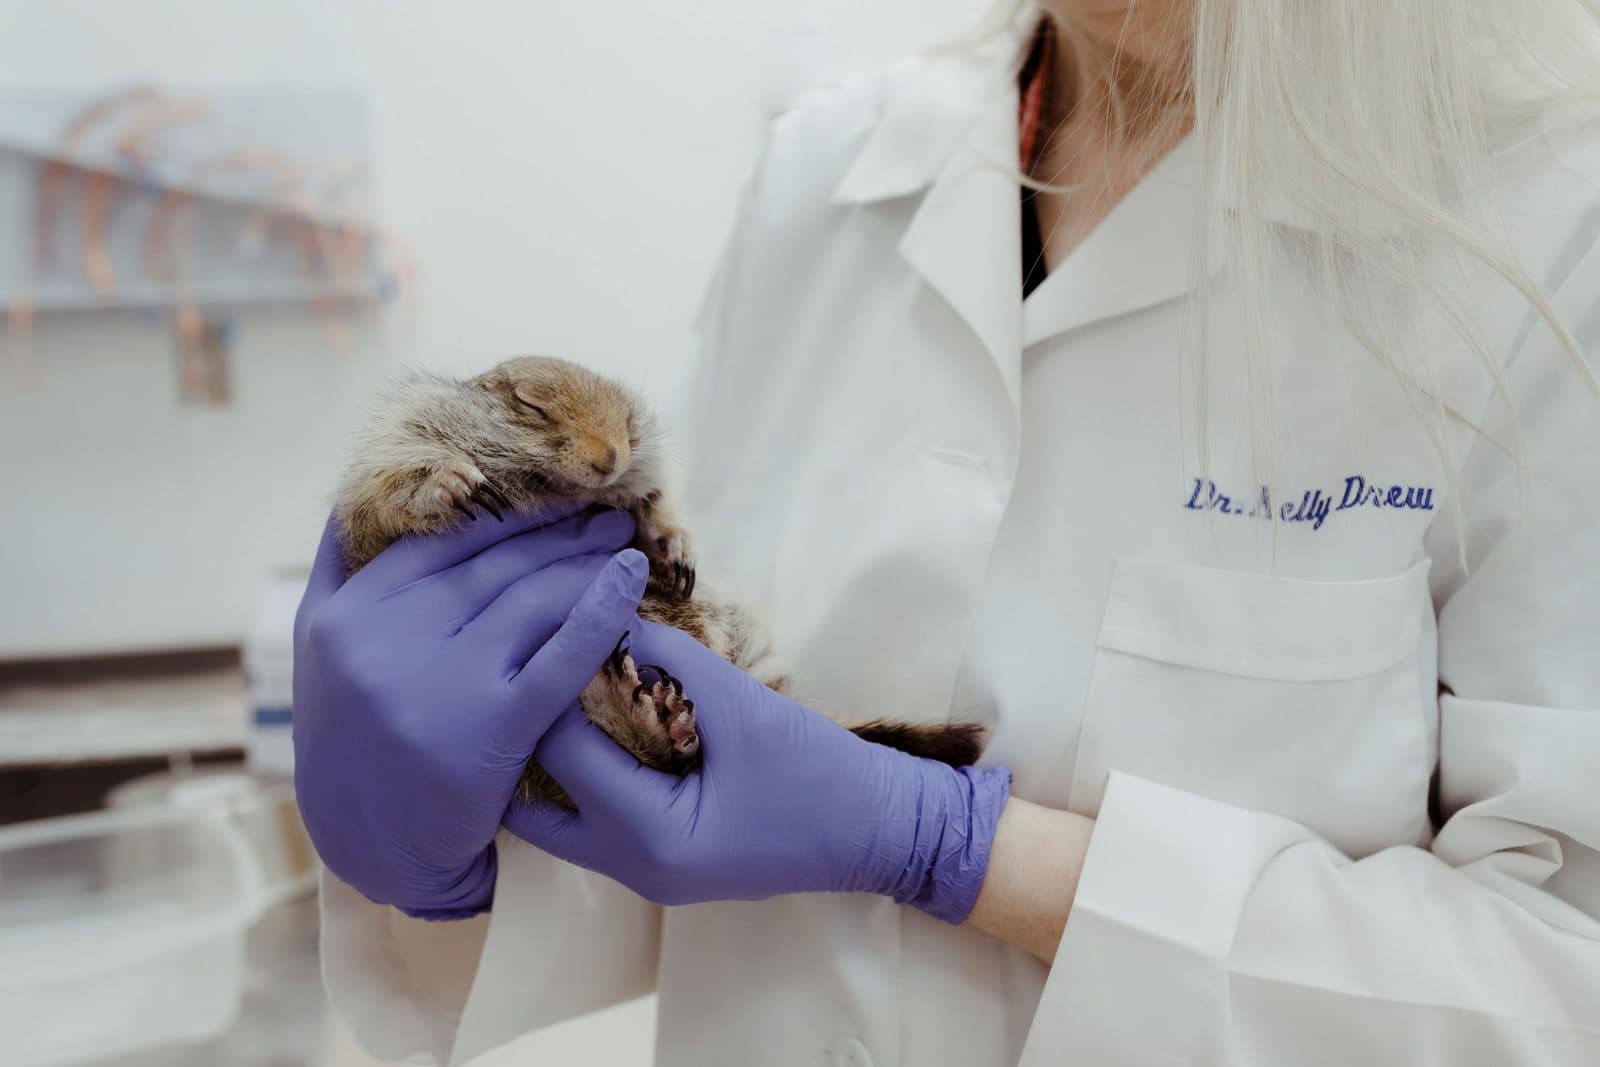 سنجاب زمینی قطبی در خواب زمستانی - دکتر کلی درو